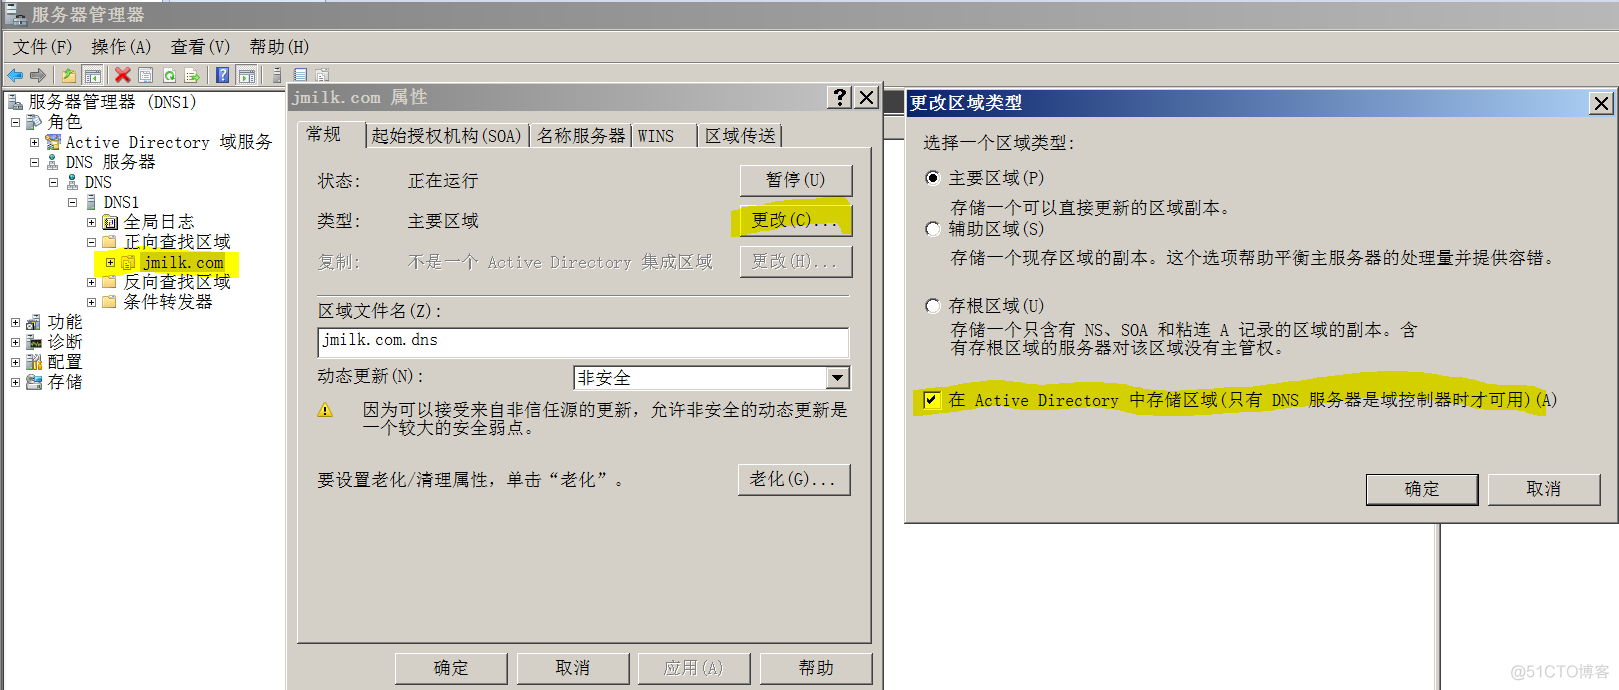 Windows 08 R2_创建AD DS域服务(图文详解)_技术_14